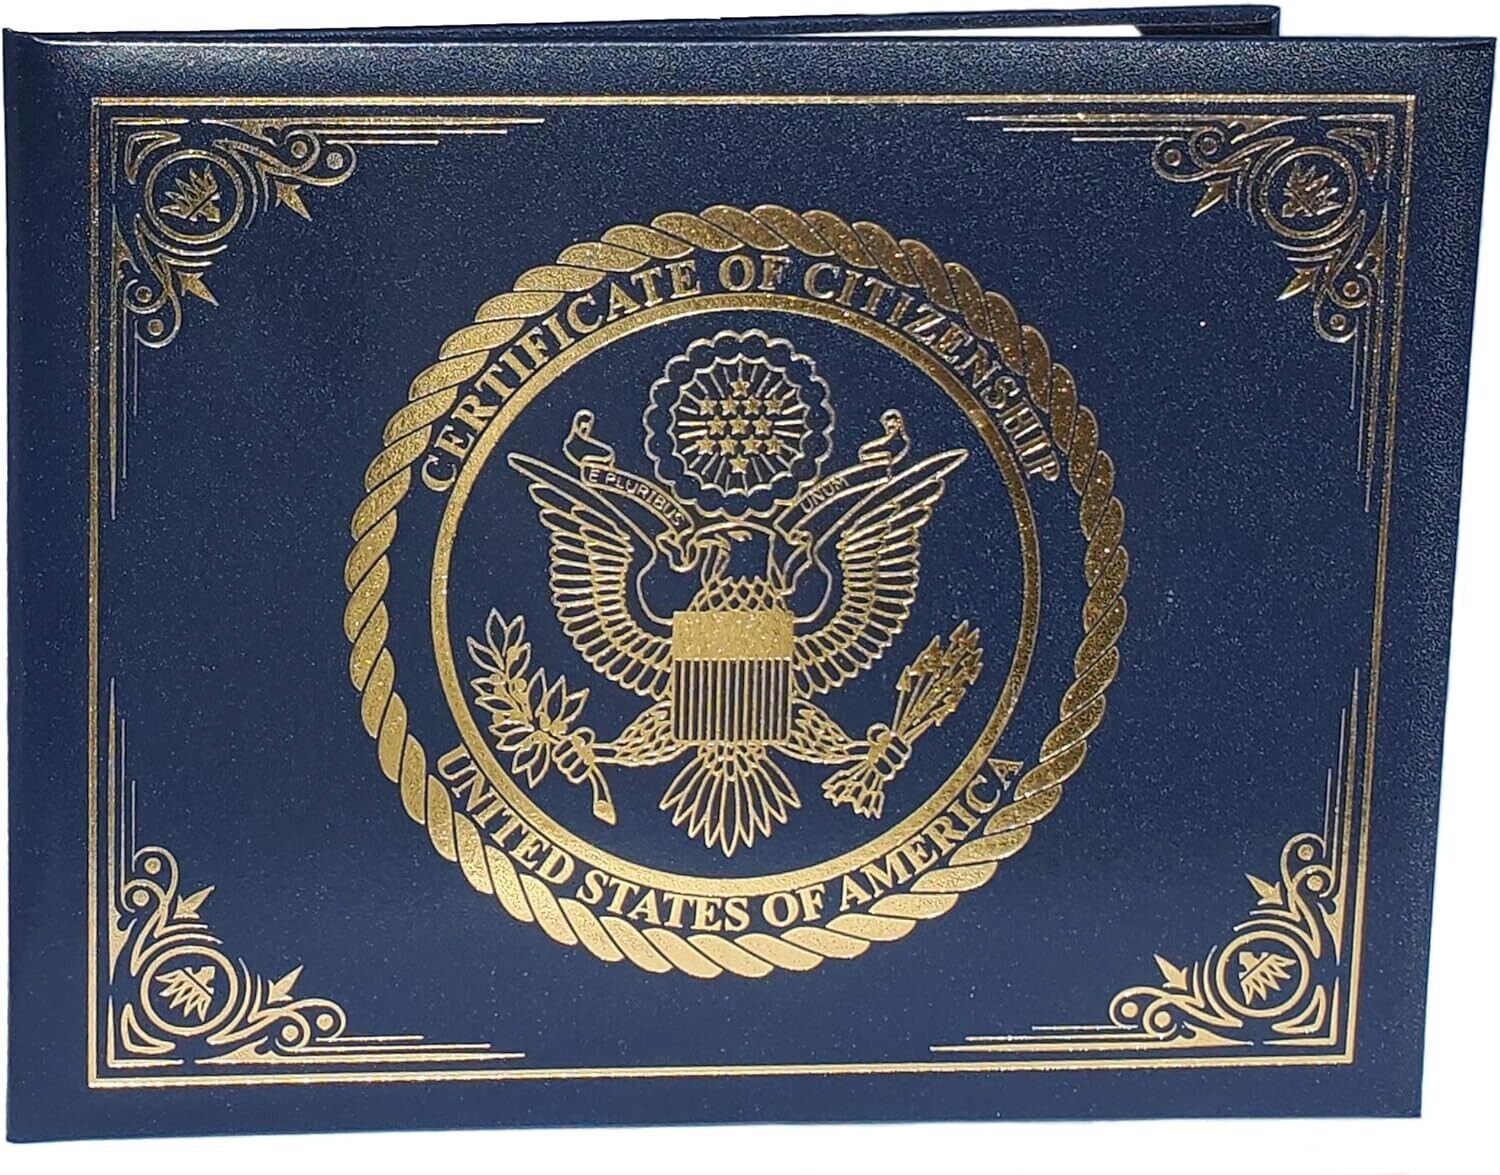 U.S. Citizenship and Naturalization Certificate Holder. Gold American Eagle l...